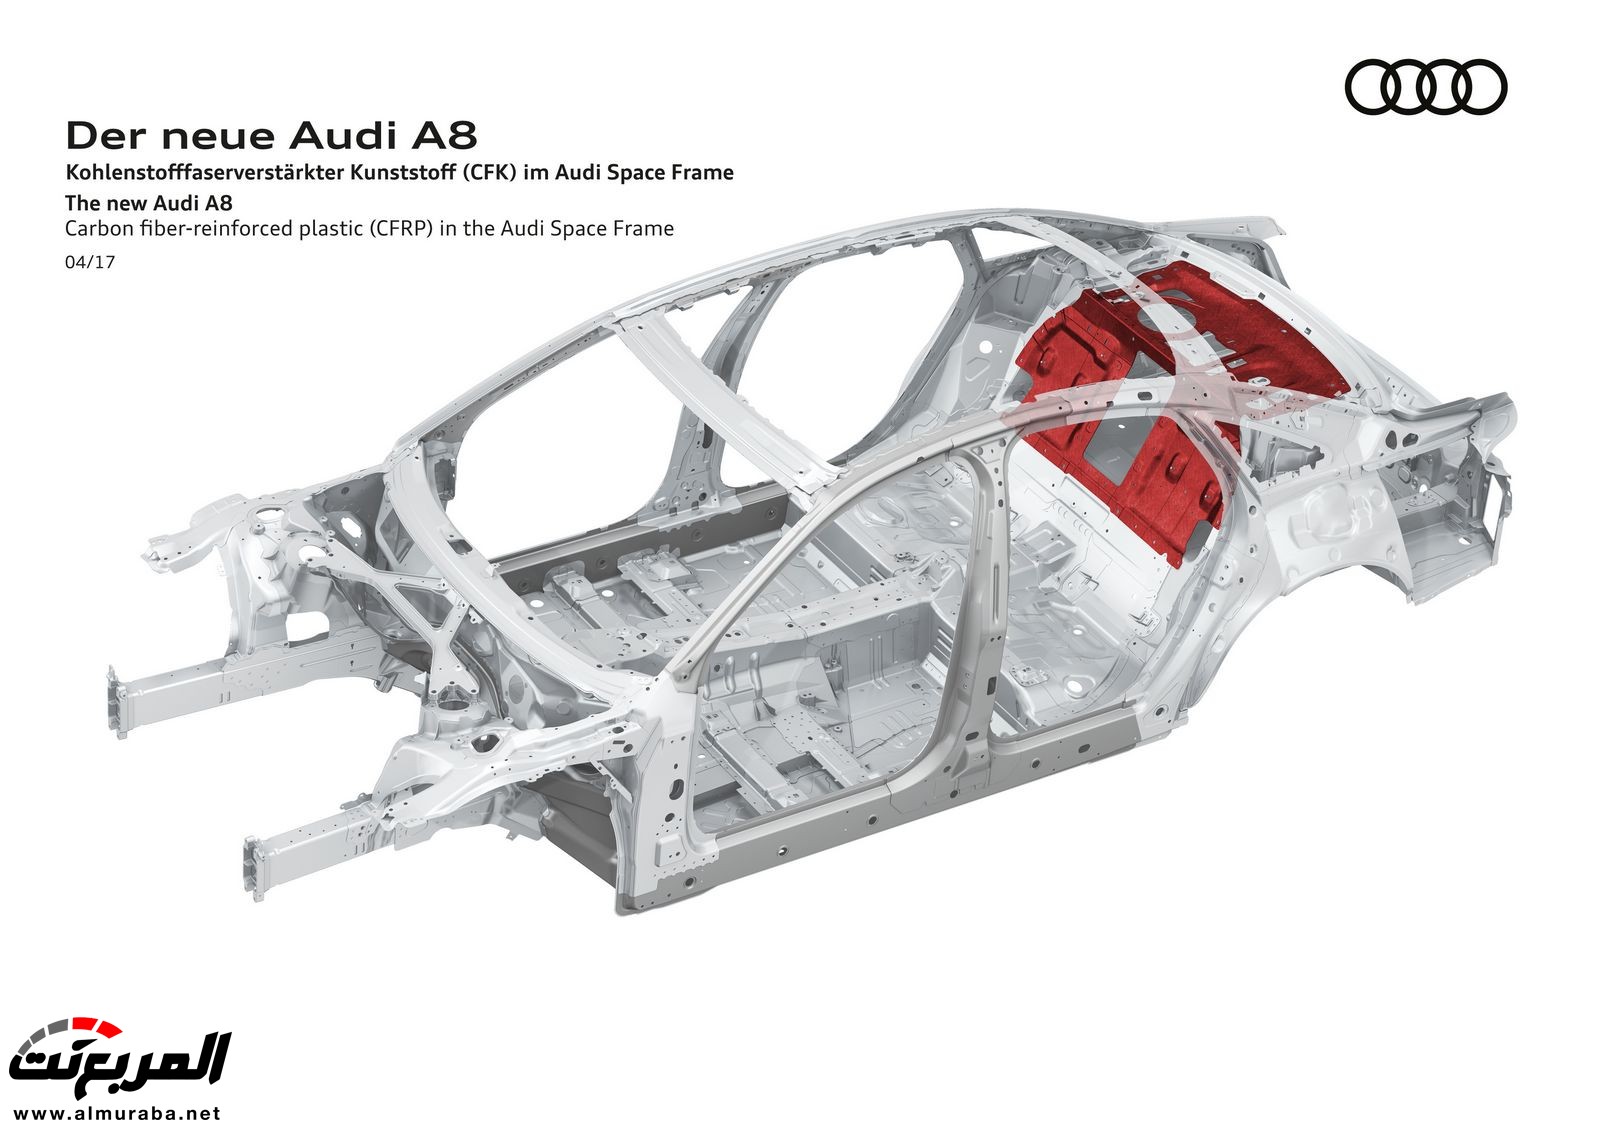 أودي A8 2018 الجديدة كلياً تكشف نفسها بتصميم وتقنيات متطورة "معلومات + 100 صورة" Audi A8 67